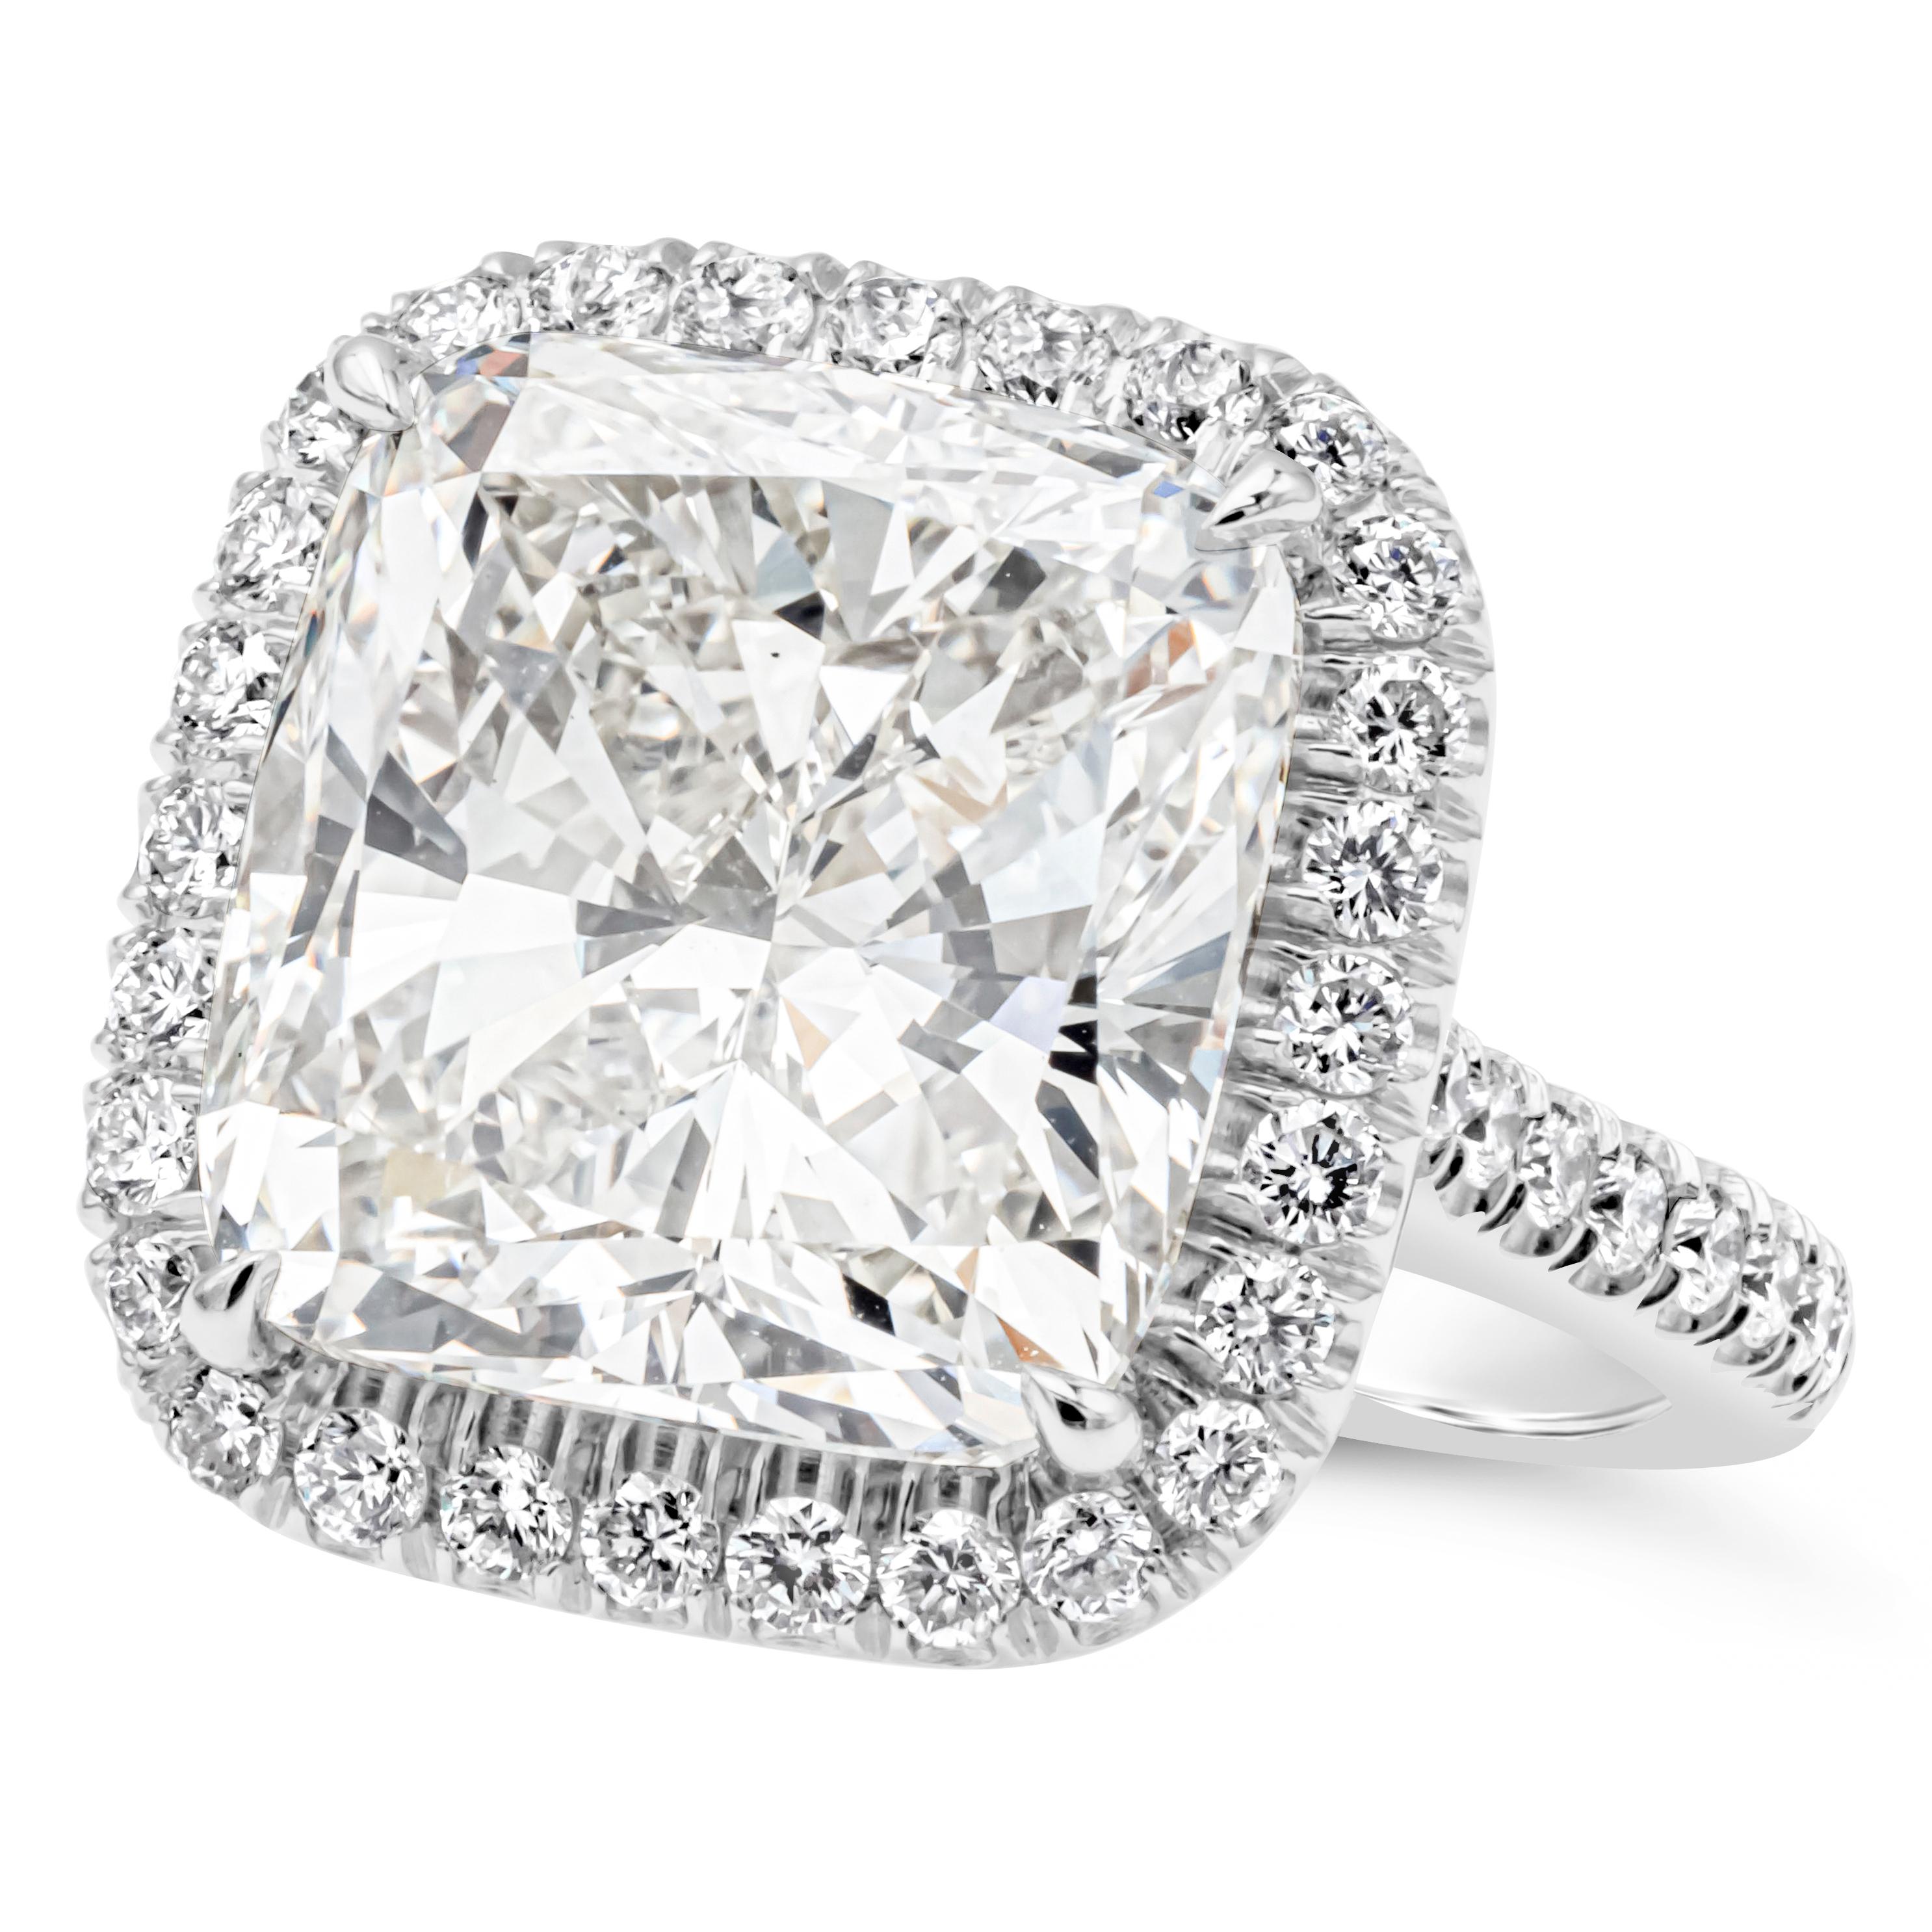 Brillanter und eleganter Halo-Verlobungsring mit einem GIA-zertifizierten Diamanten im Kissenschliff von 11,46 Karat, Farbe J und Reinheit VS2. Er ist in einer vierzackigen Platinfassung gefasst und von einer Reihe von runden Brillanten umgeben. Der